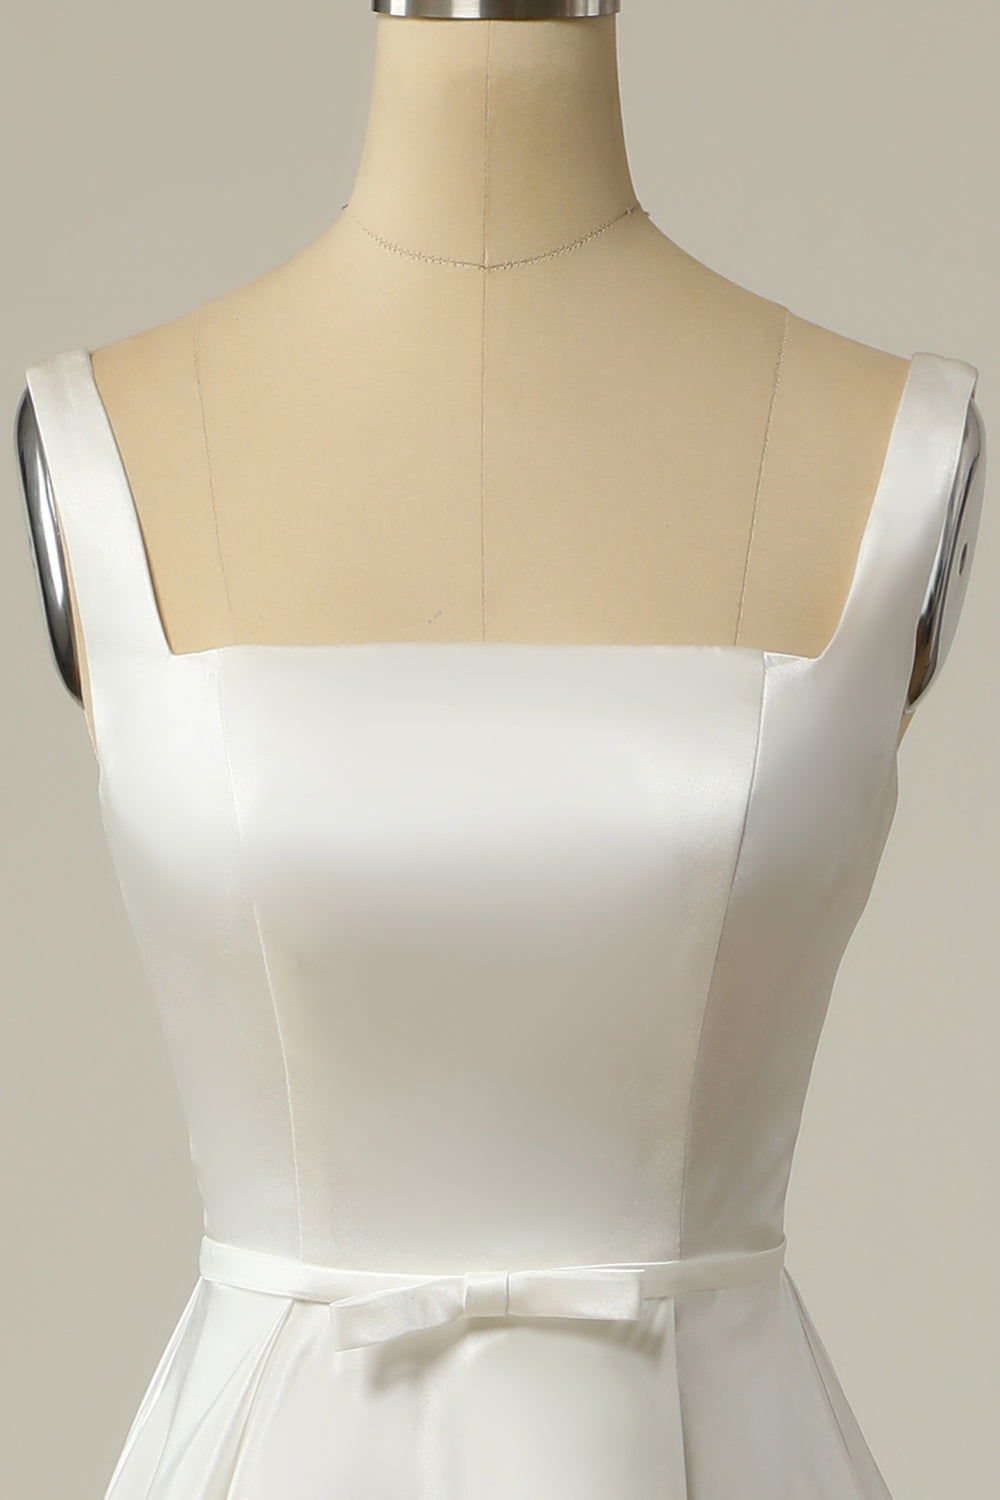 Vestido de novia largo de satén blanco con escote cuadrado y sencilla línea A